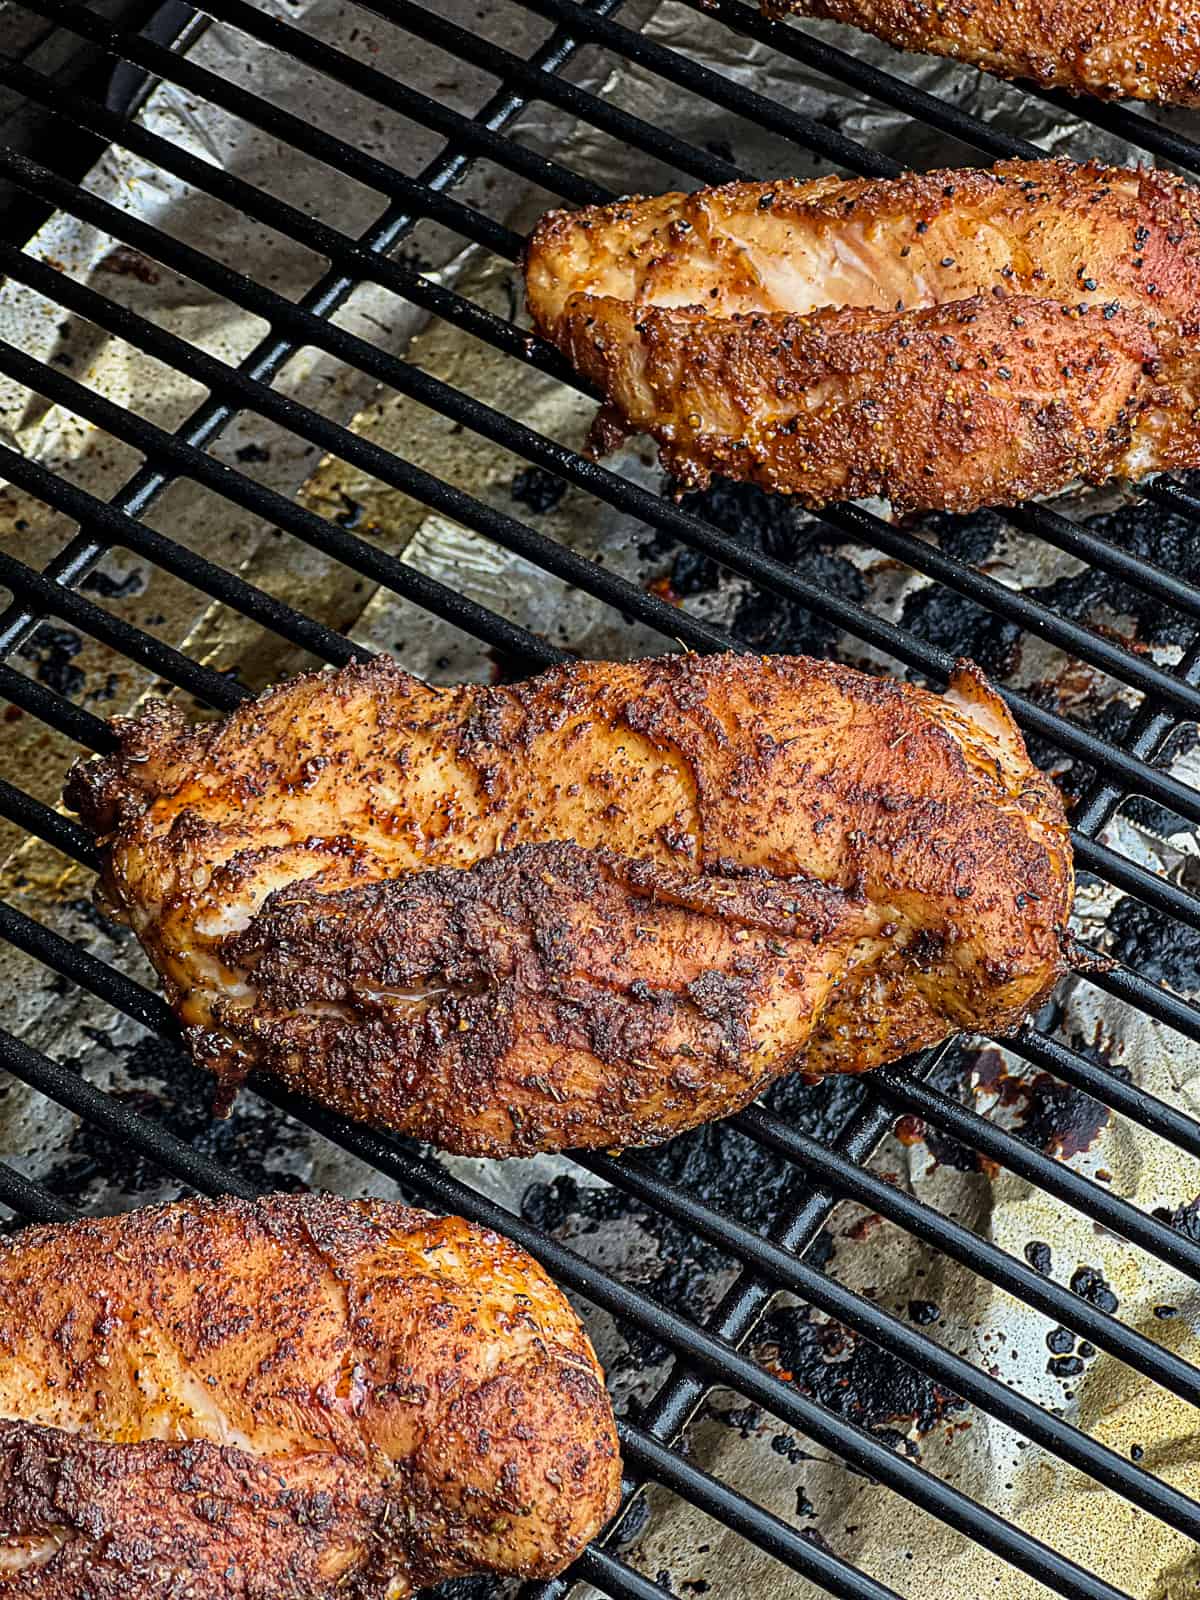 Smoking chicken breast on Traeger pellet grill